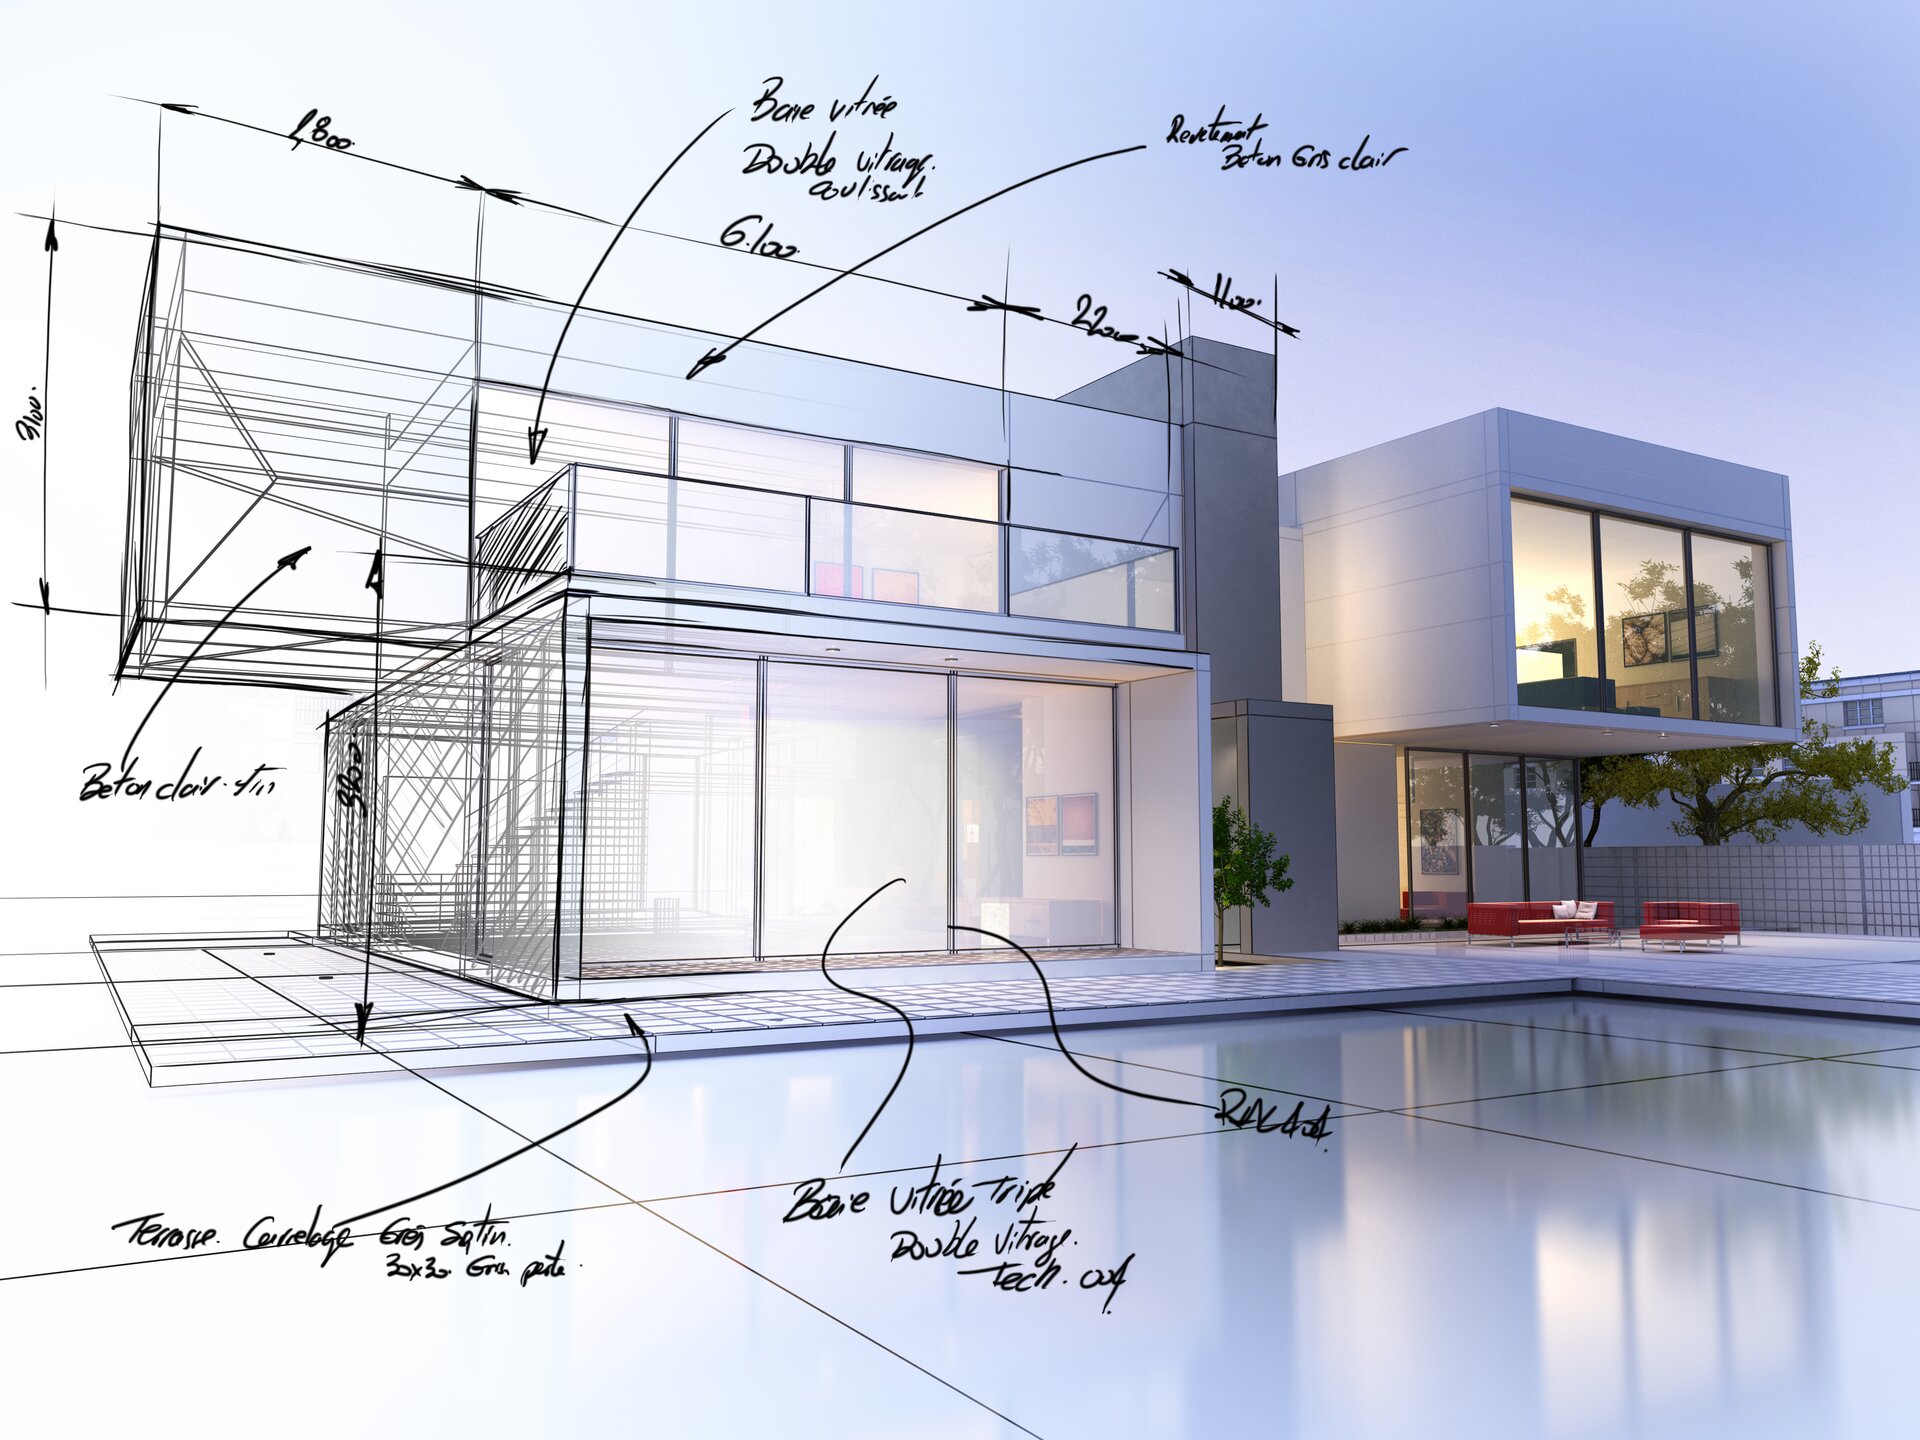 Ilustracja przedstawia rysunek architekta. Widzimy na nim wizualizację domu wraz z tarasem. Część ilustracji jest w formie rysunkowej, natomiast część w formie komputerowej. Na części rysunkowej zaznaczone zostały również wymiary elementów.